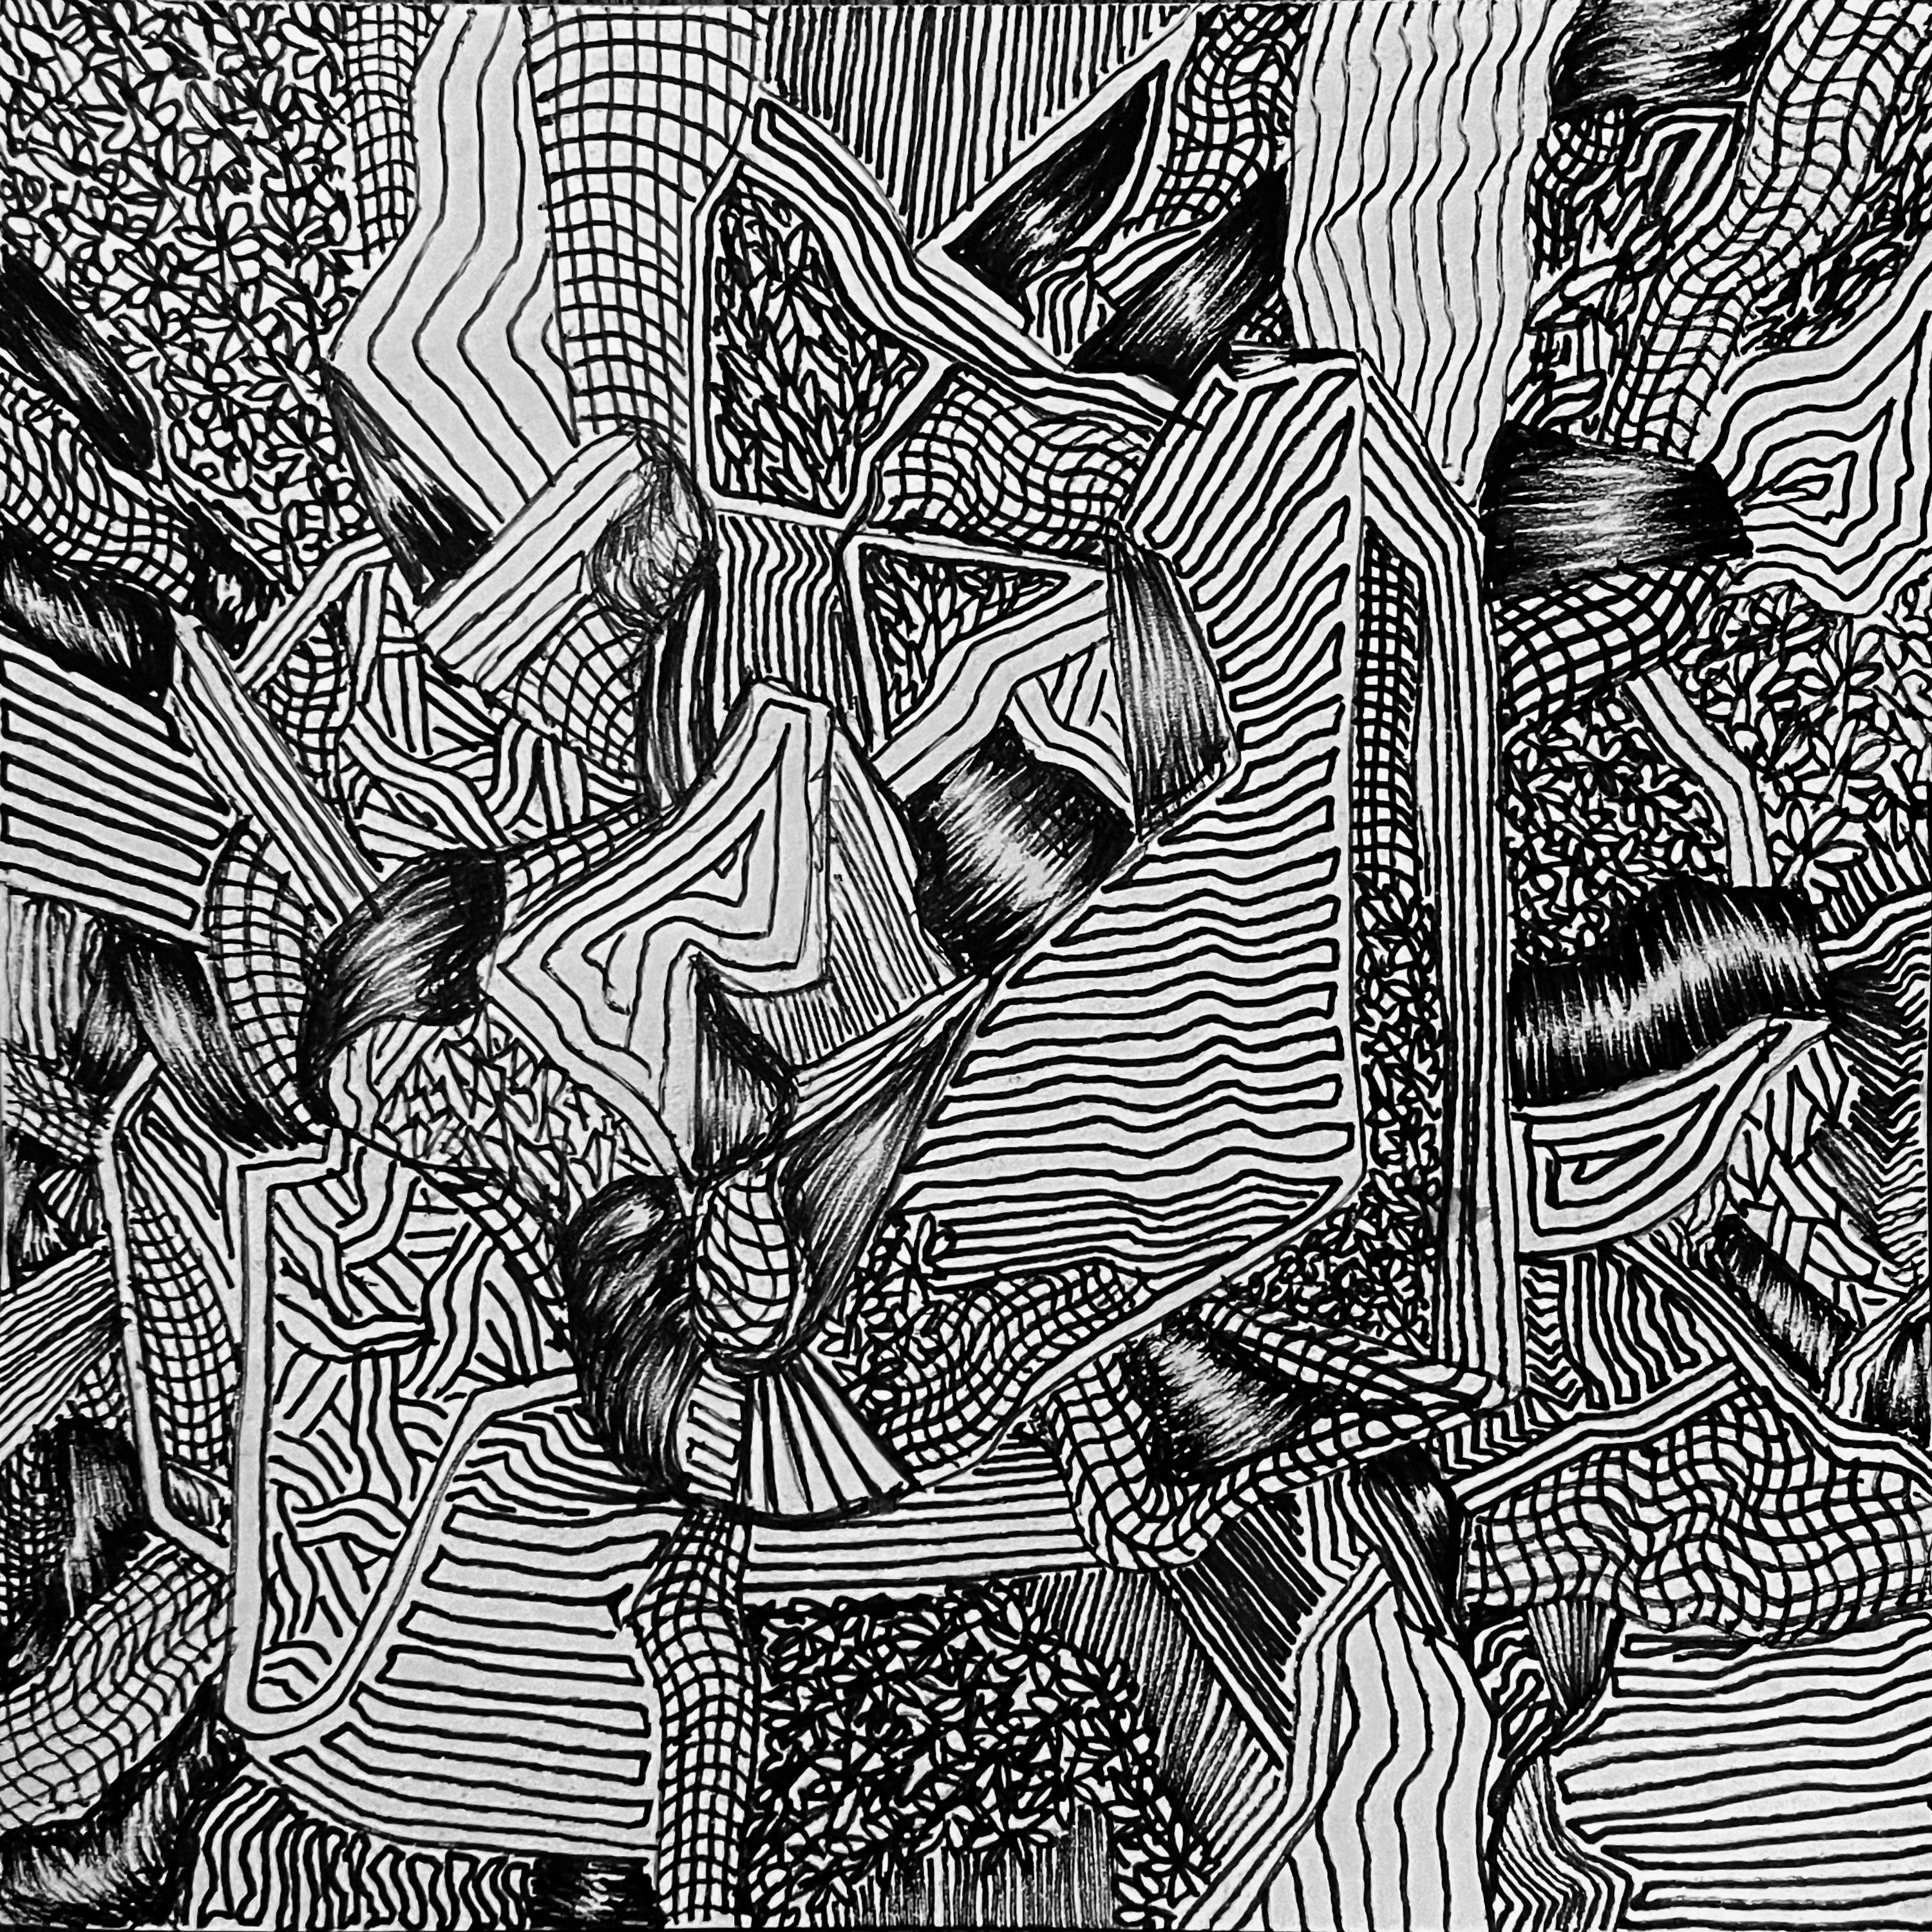 Encre sur papier

David Paul Kaye est un artiste contemporain américain né en 1982 qui vit et travaille à New York, aux États-Unis. En mettant l'accent sur des lignes vibrantes et des compositions complexes, Kaye crée des récits captivants sur des